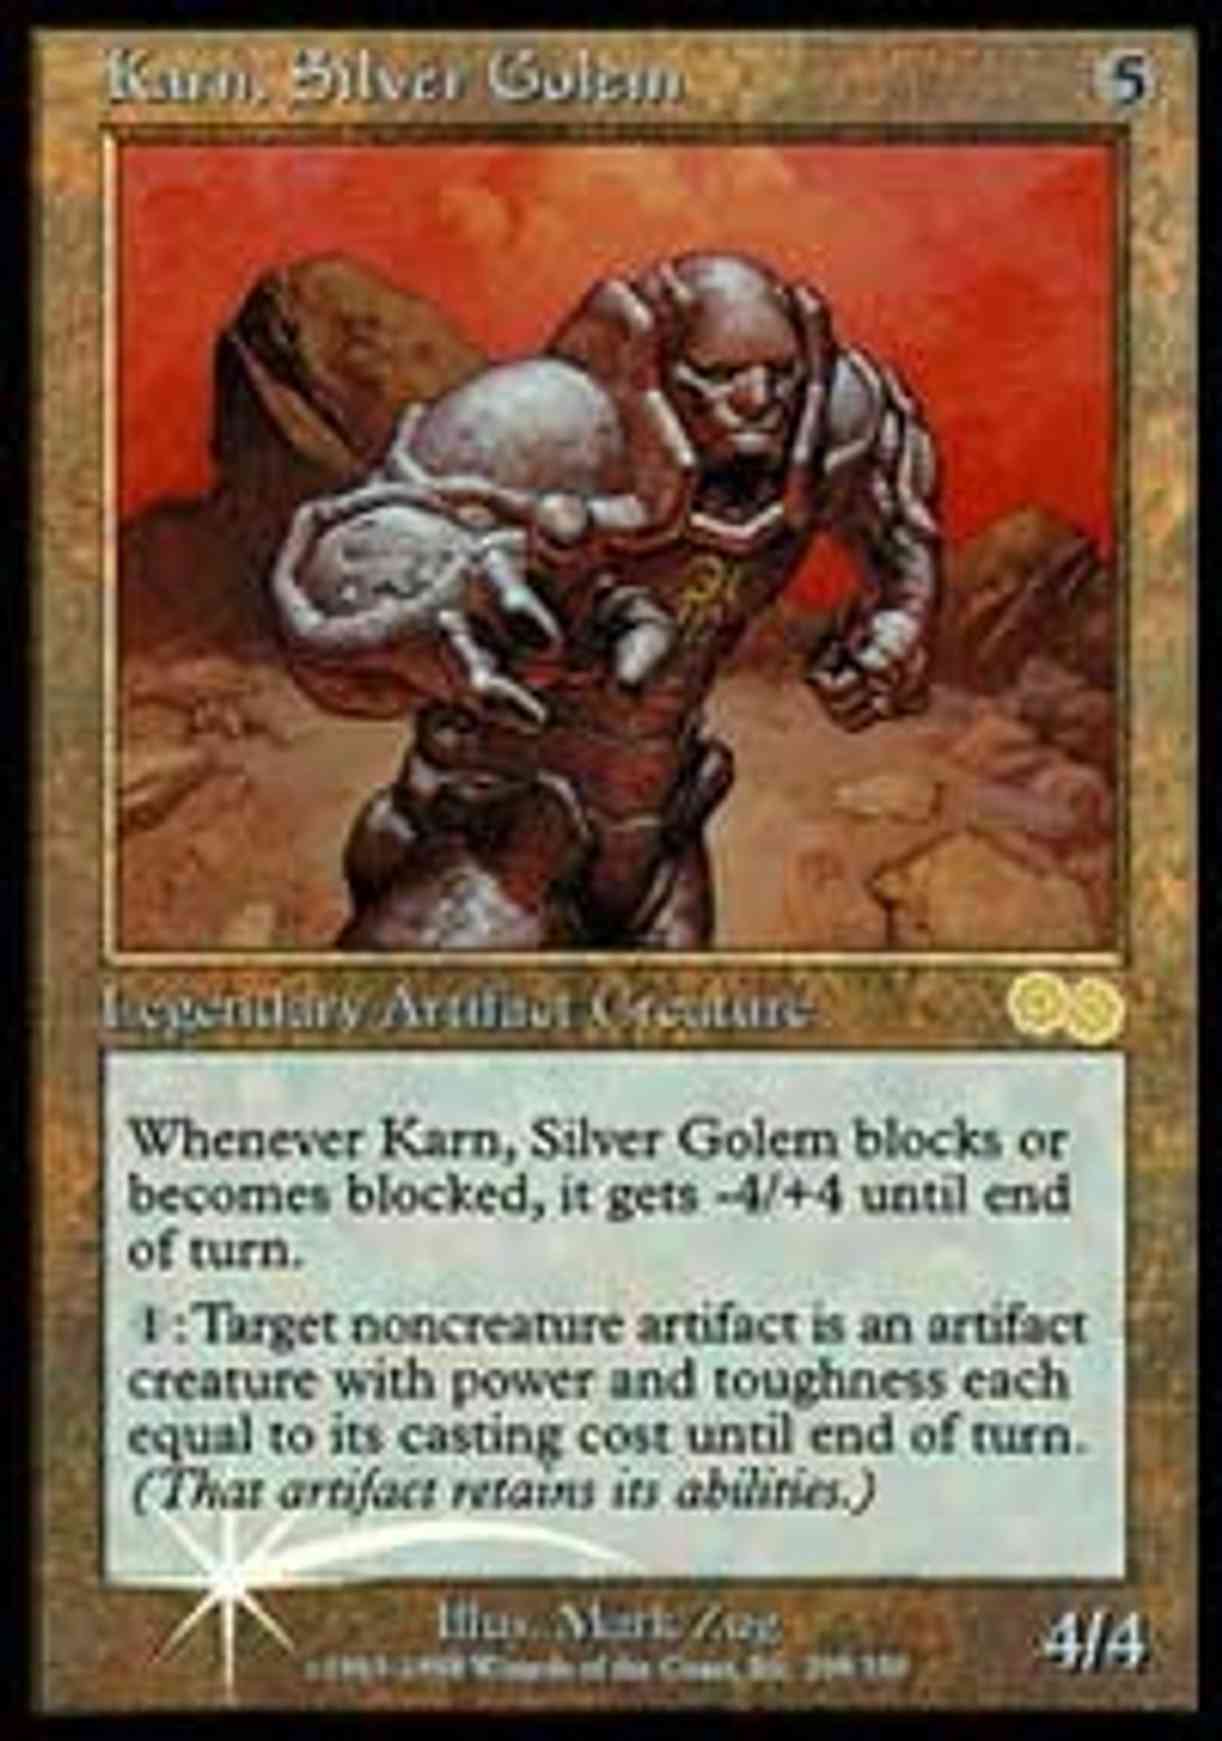 Karn, Silver Golem magic card front